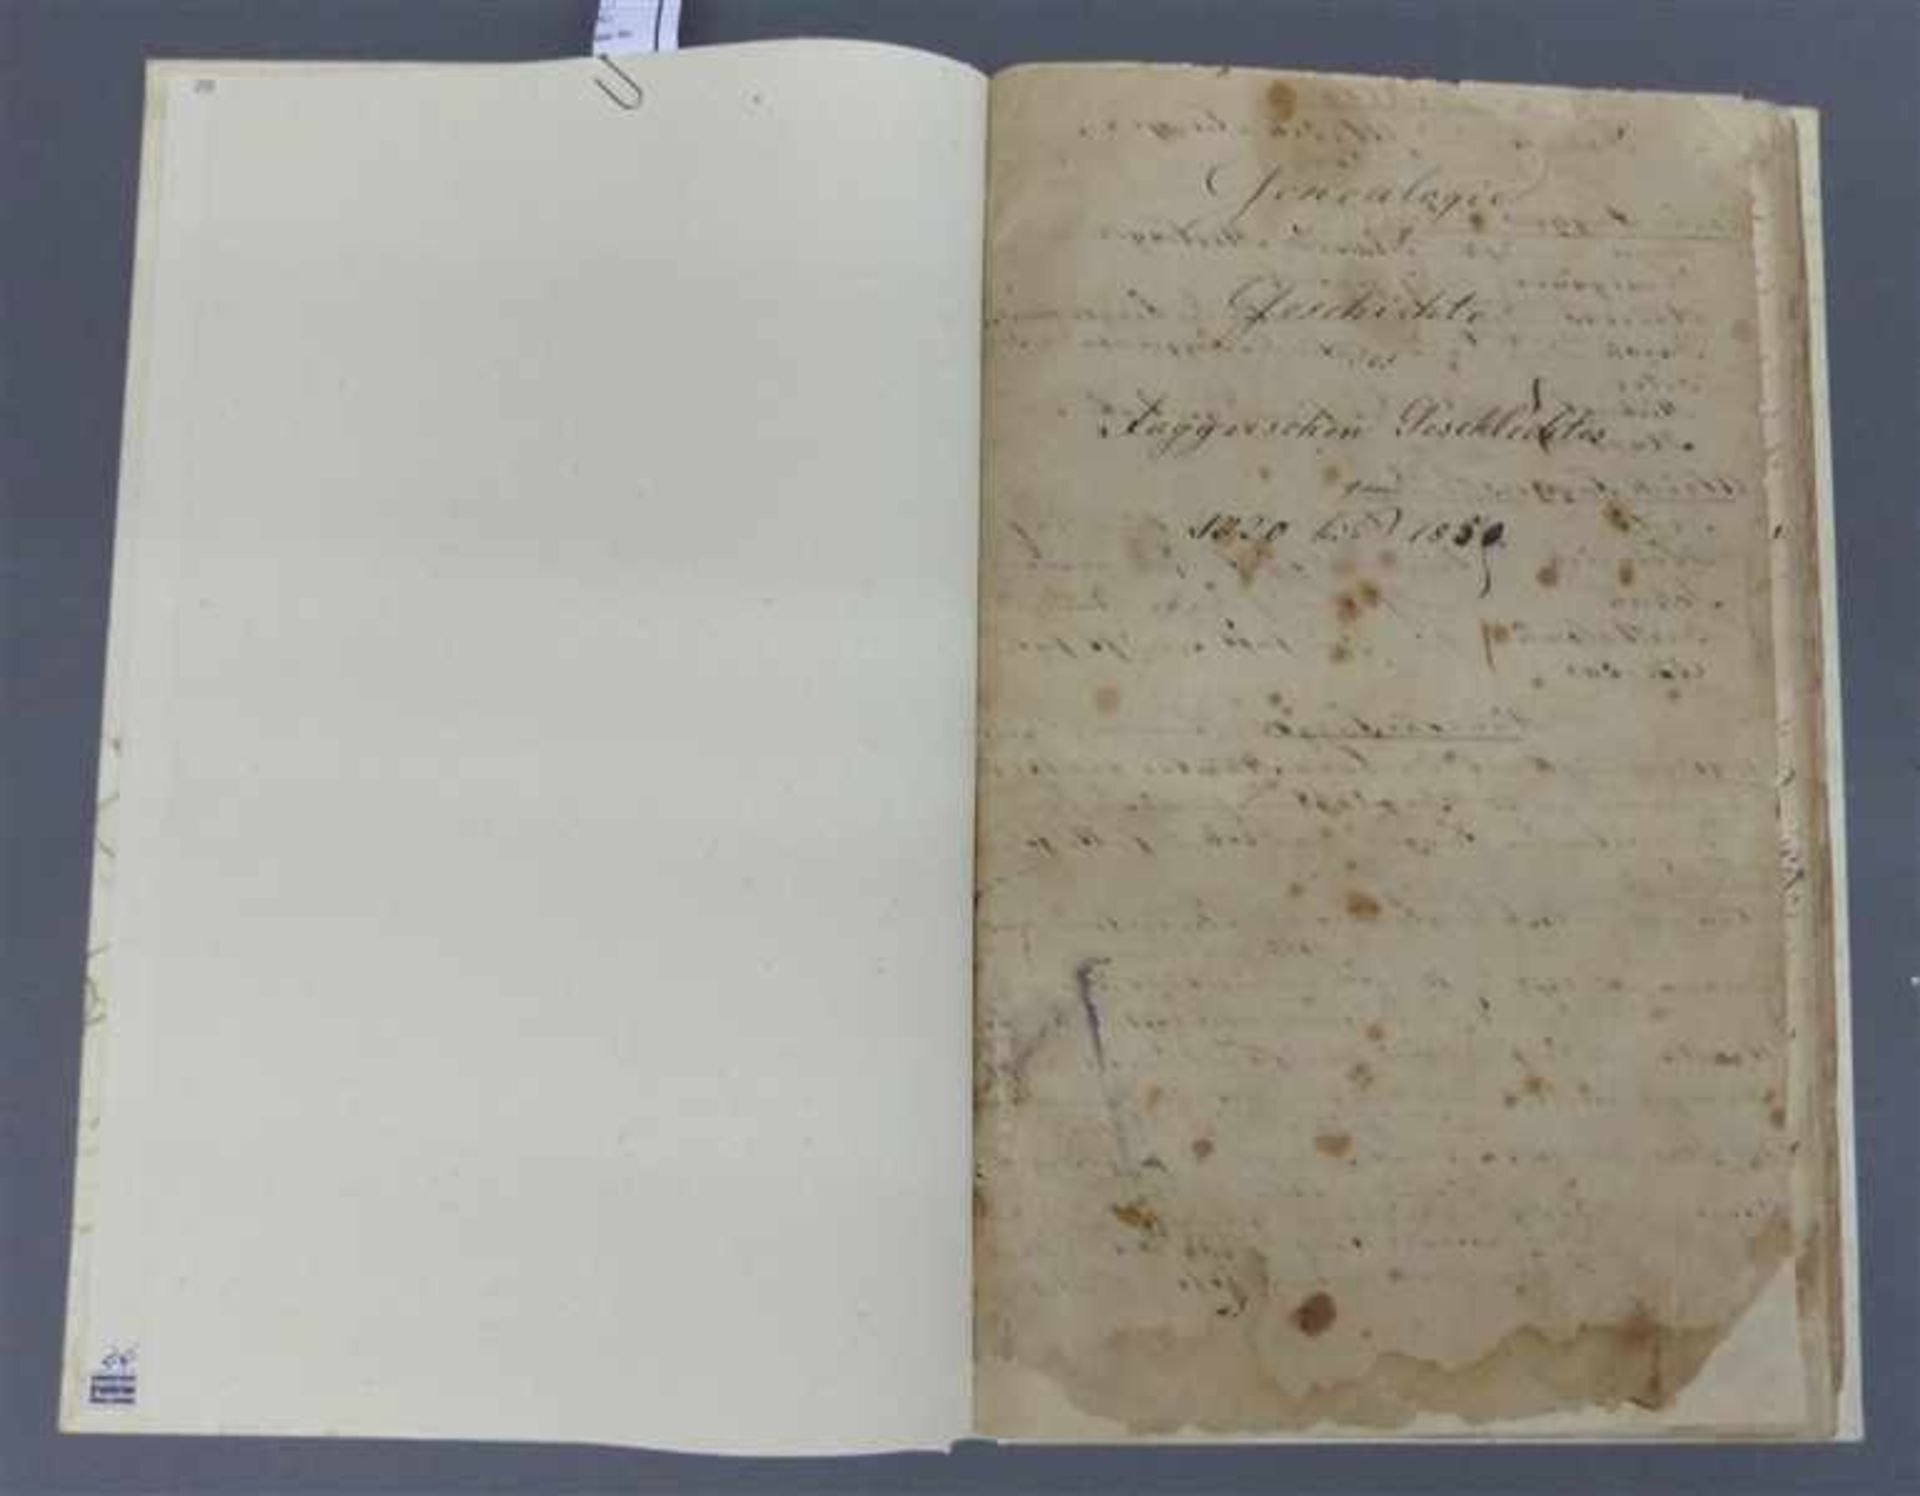 BuchFugger Genealogie, Faksimileausgabe, Geschichte des Fuggerschen Geschlechtes, 1720-1850,